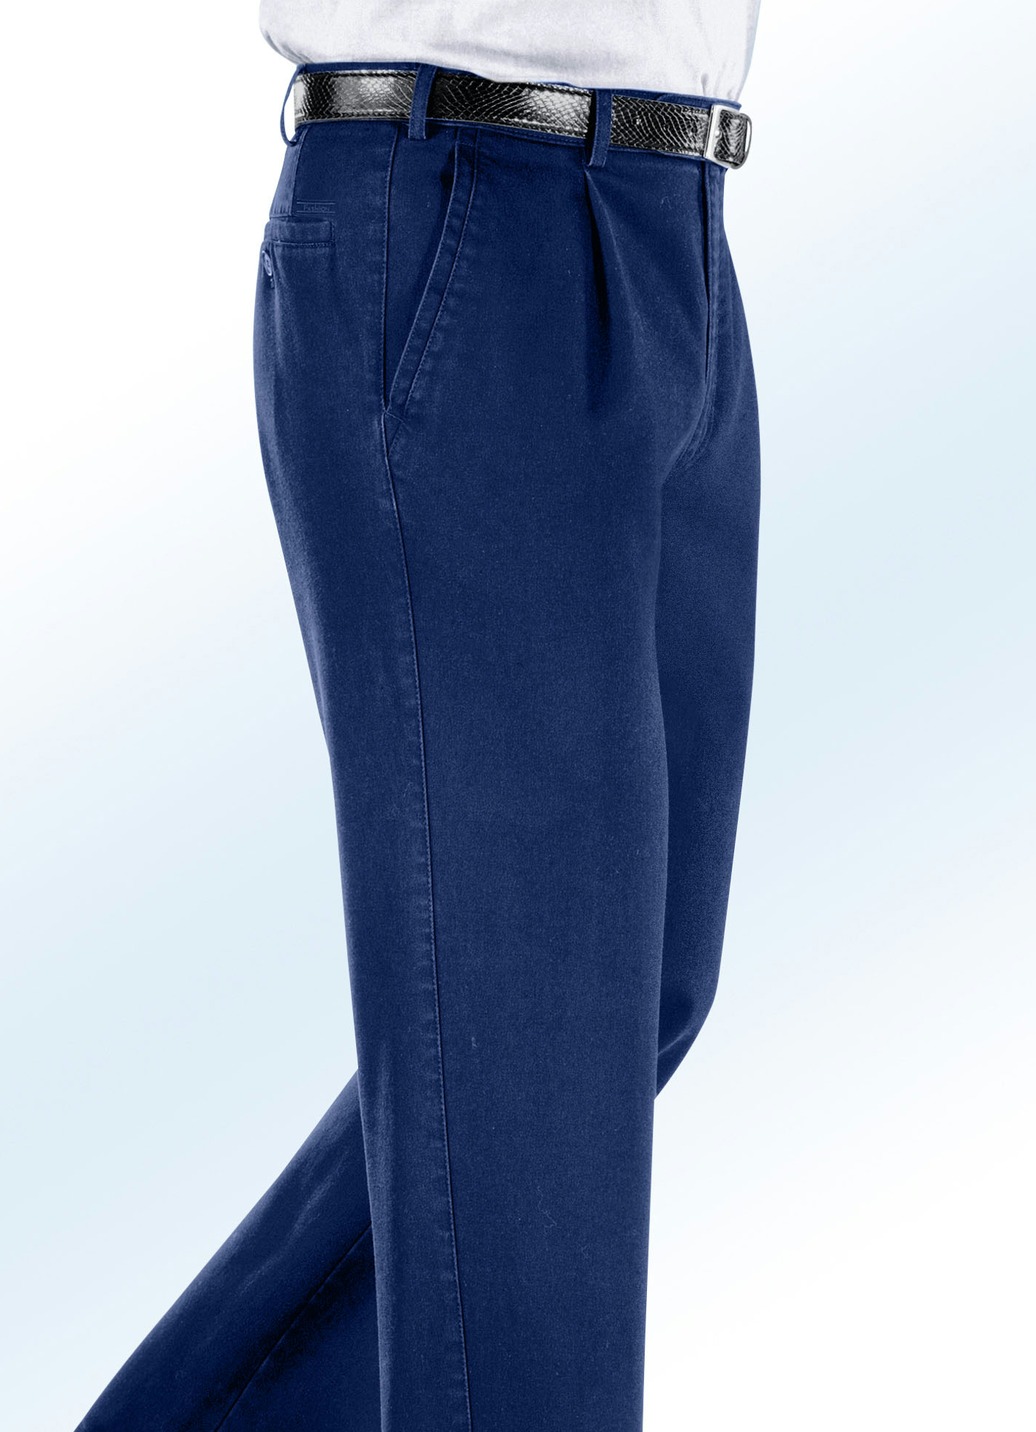 Bügelfreie Jeans mit Zieretikett in 3 Farben, Jeansblau, Größe 52 von BADER